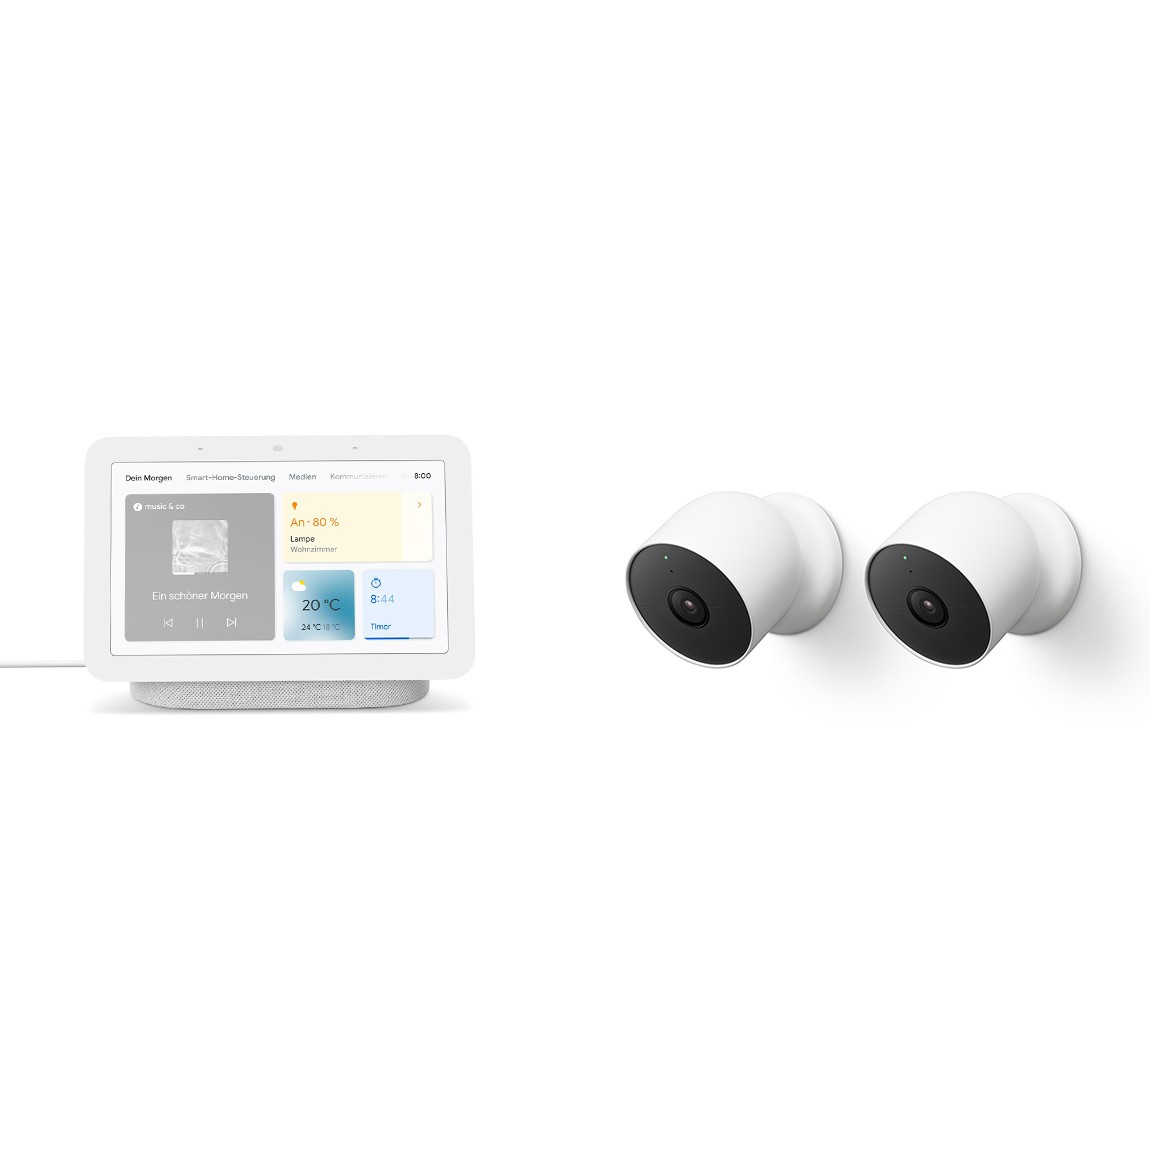 Bild zu Google Nest Cam im Doppelpack mit Google Nest Hub (2. Generation) für 289€ (Vergleich: 368,17€)